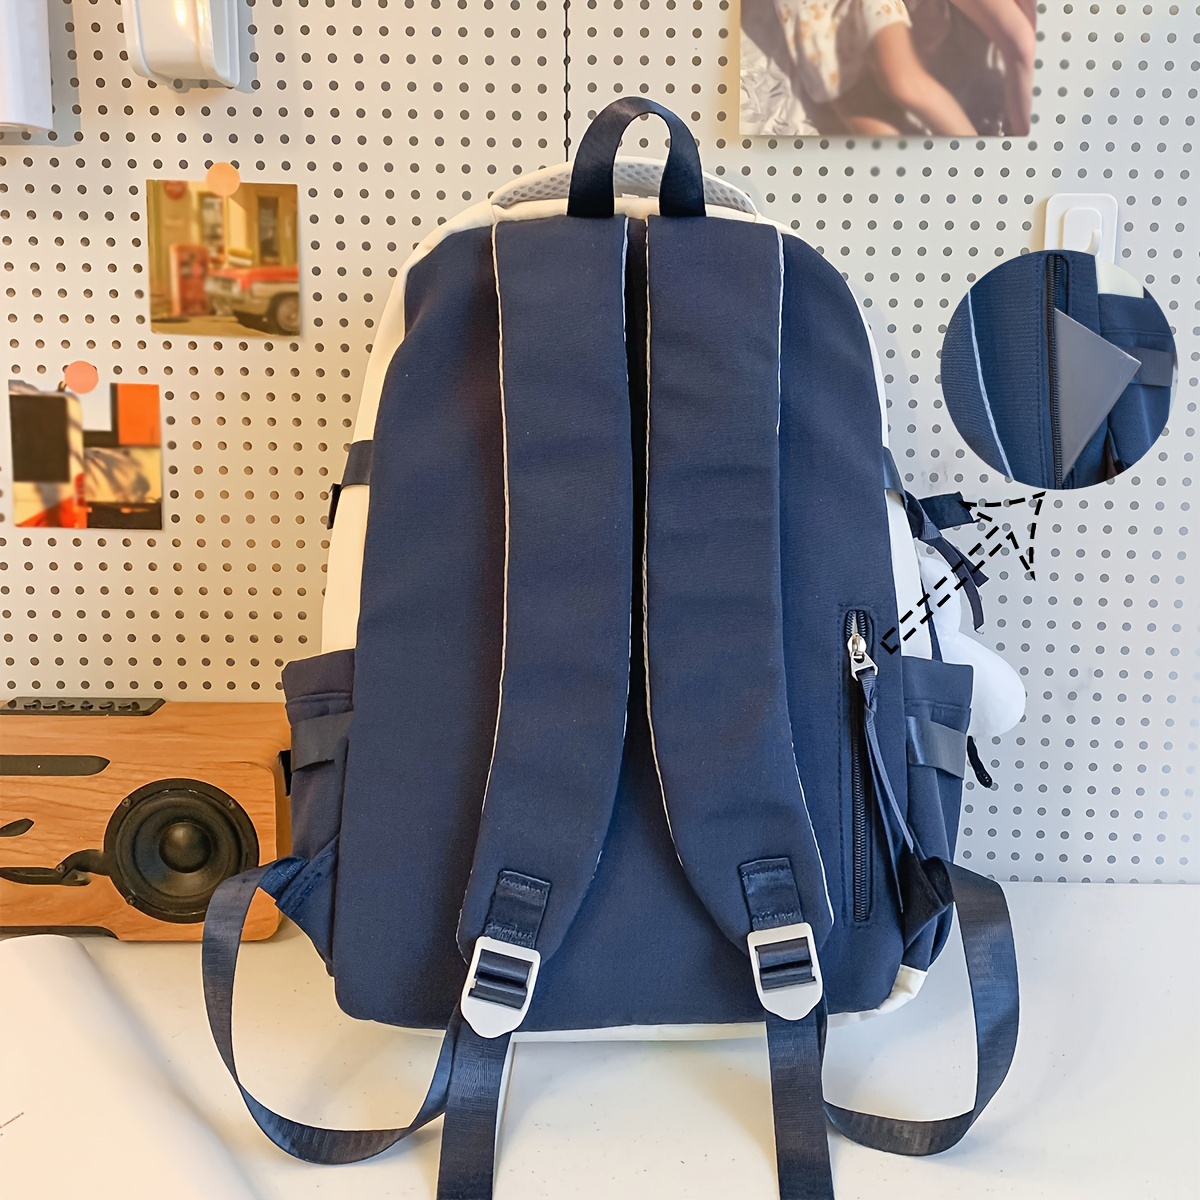 Backpacks y mochilas para hombre que son funcionales y muy modernas